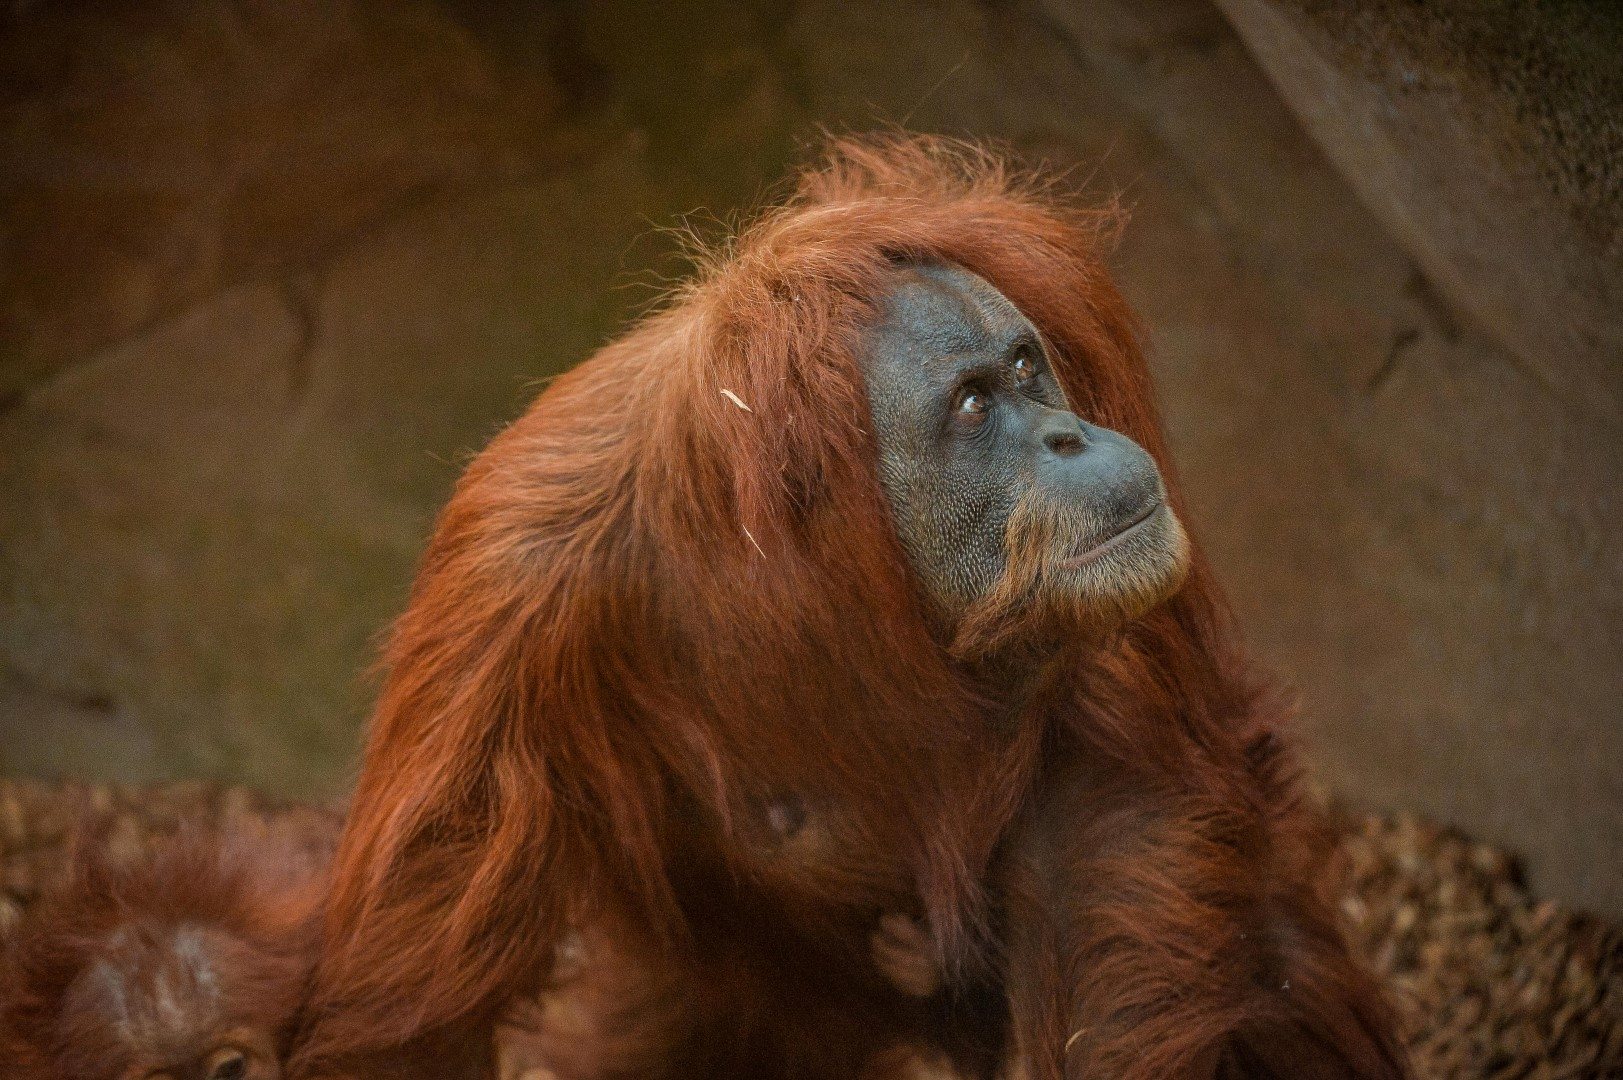 Sumatran orangutan at Chester Zoo